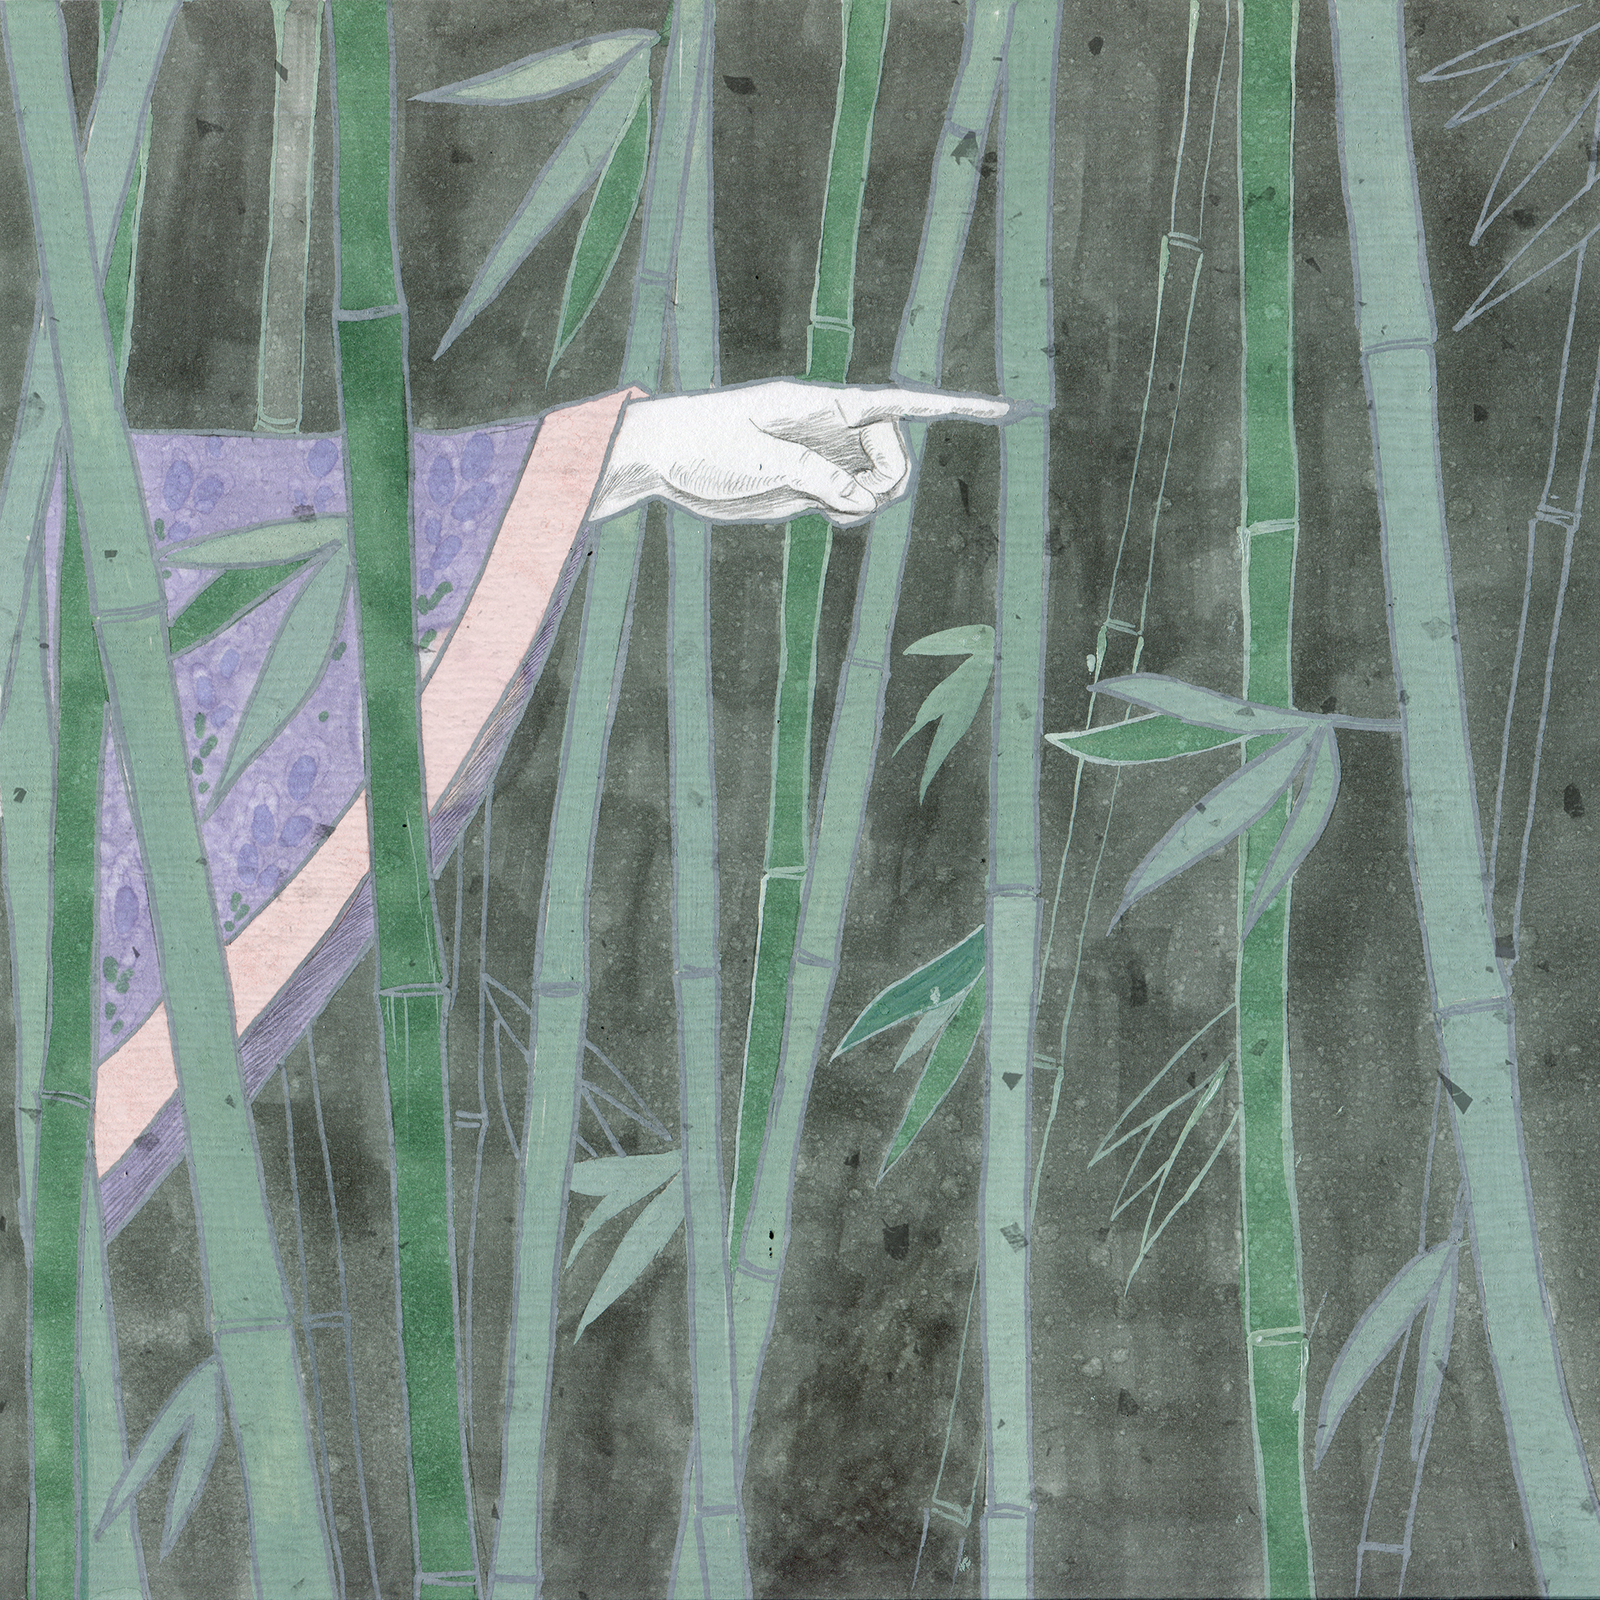 Ryunosuke Akutagawa In the thicket - My, Longpost, Illustrations, Detective, Art, Ryunosuke Akutagawa, Japan, Drawing, Marker